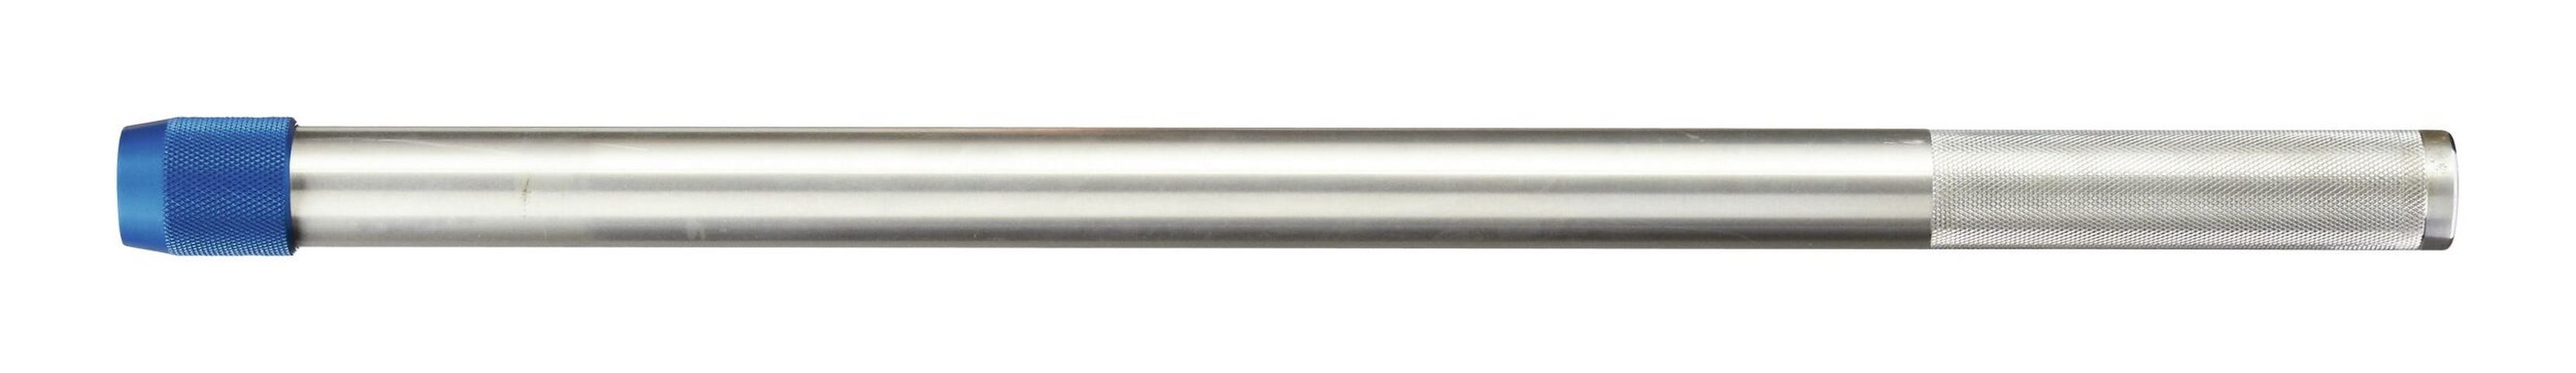 Gedore Drehmomentschlüssel, Aufsteckrohr 762 mm für Drehmomentschlüssel Dremometer Aluminium